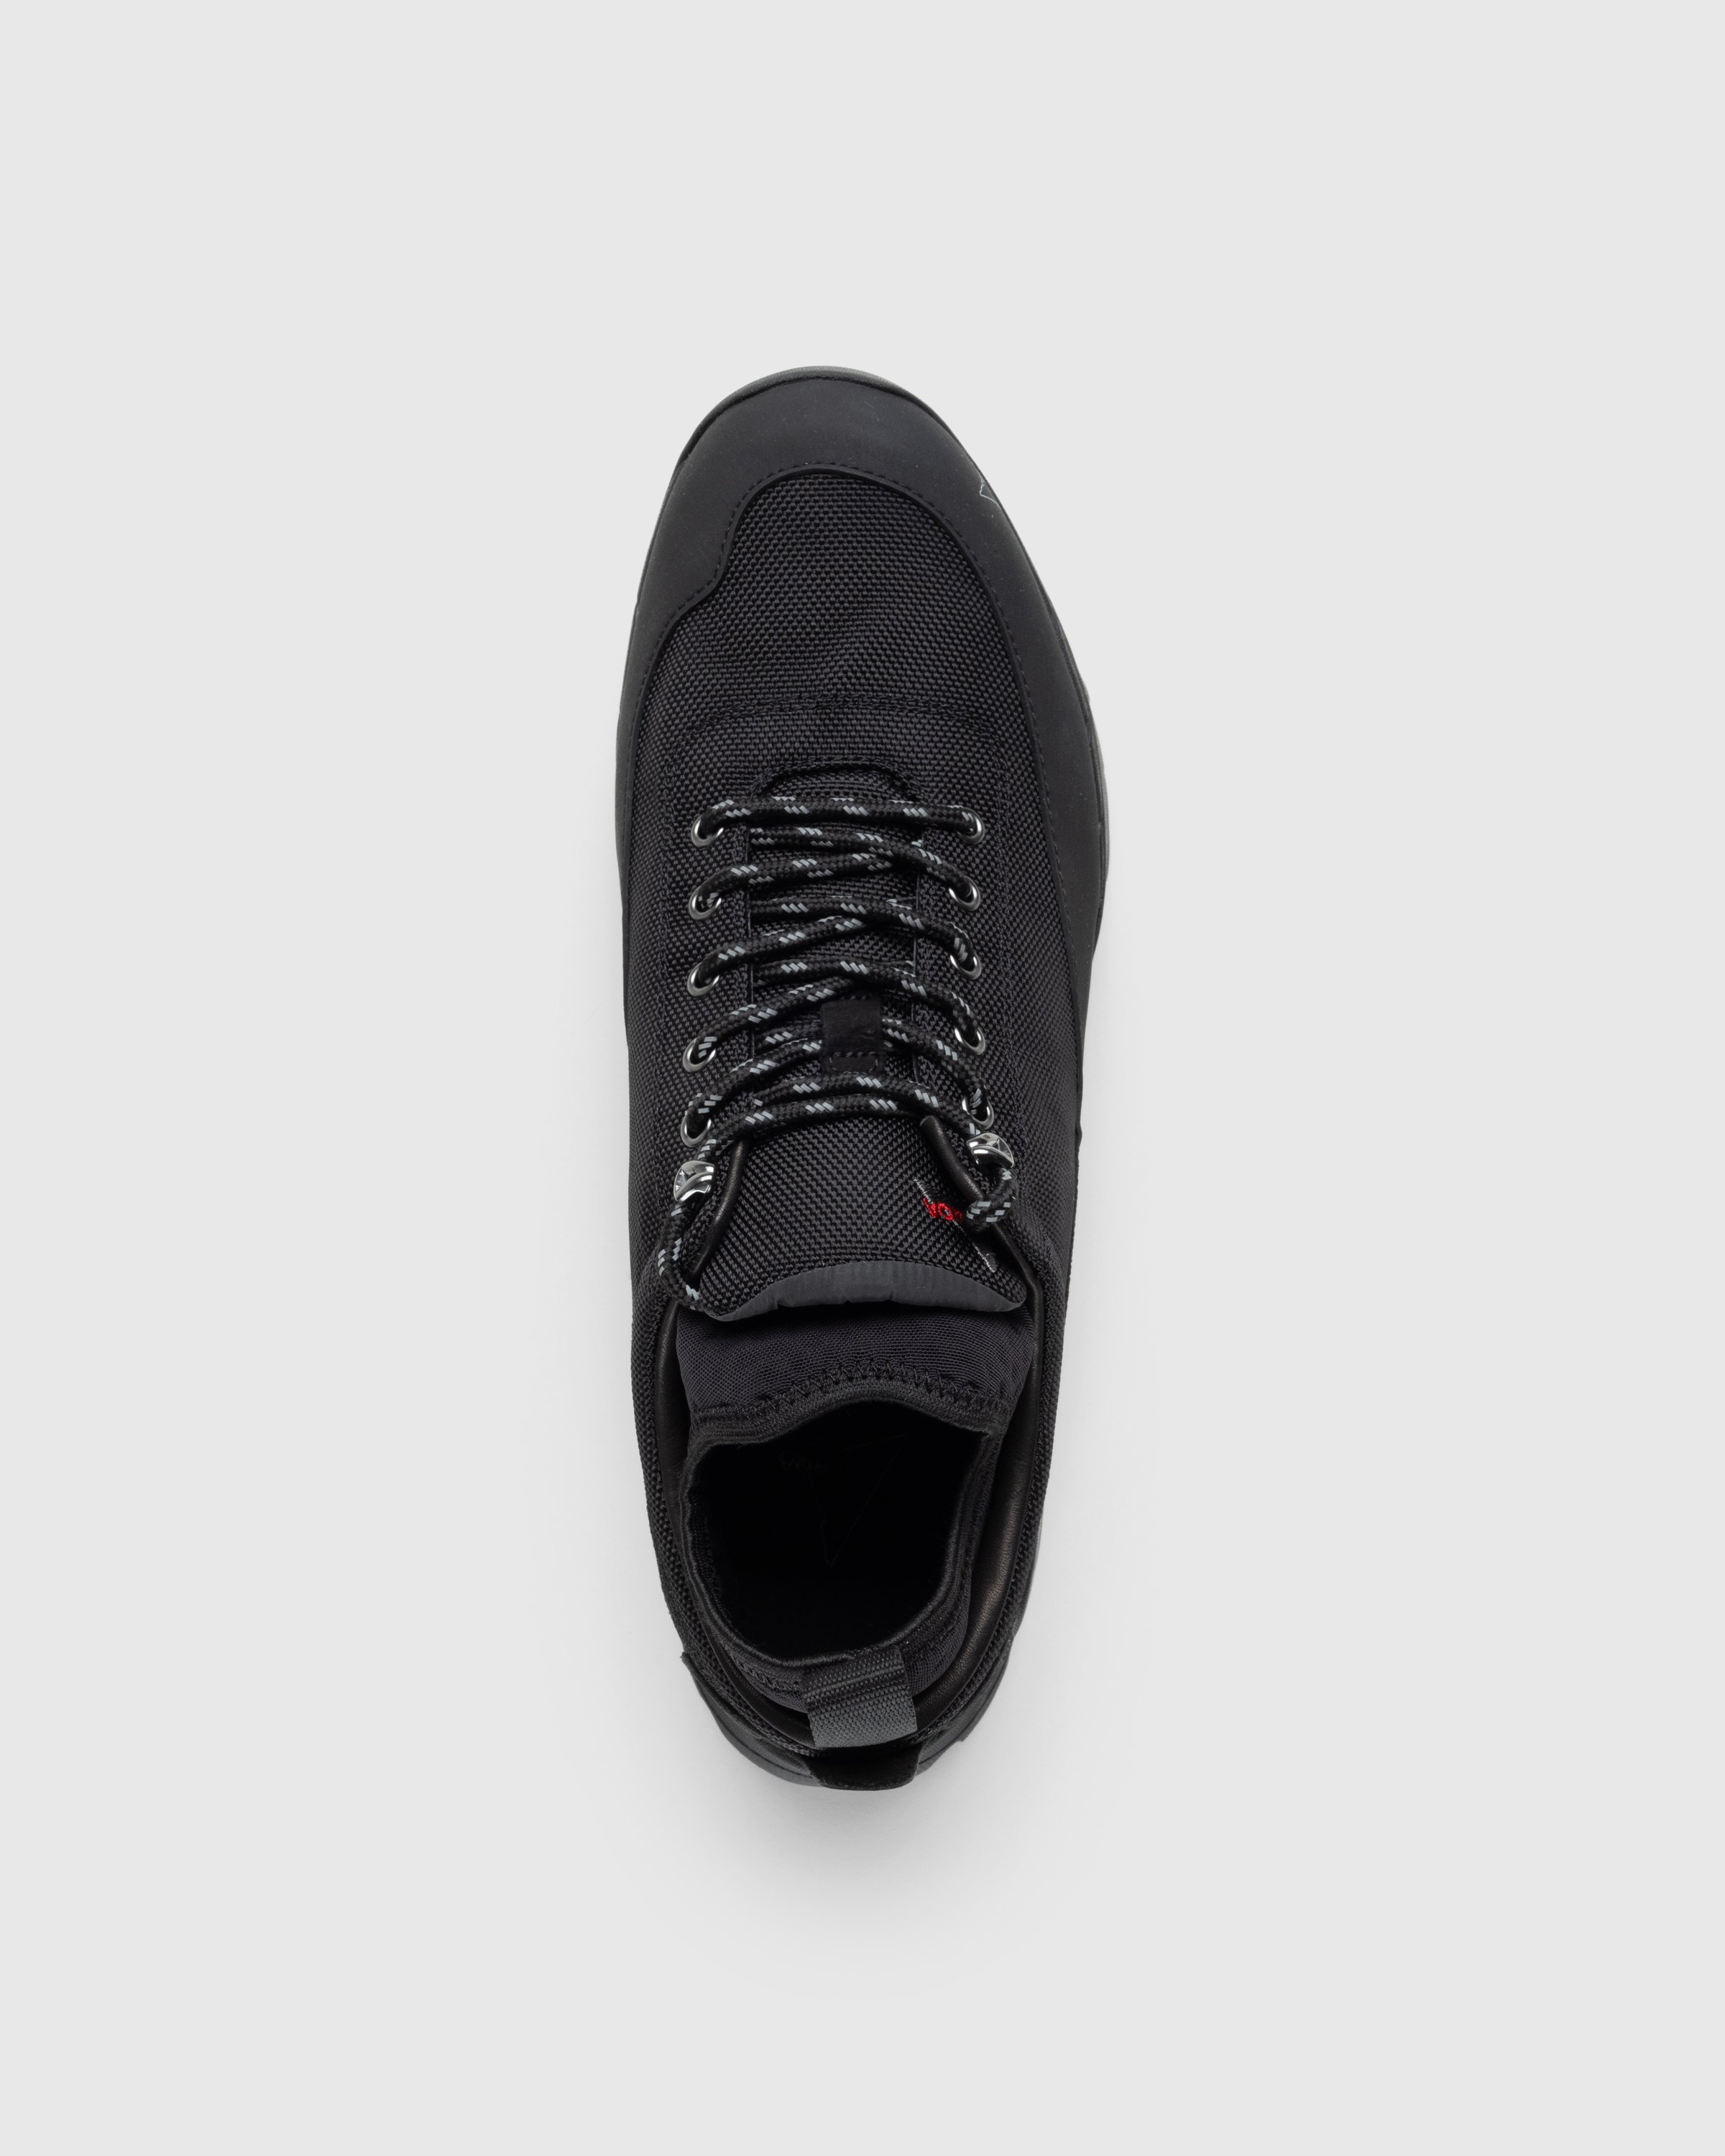 ROA - Neal Black - Footwear - Black - Image 5